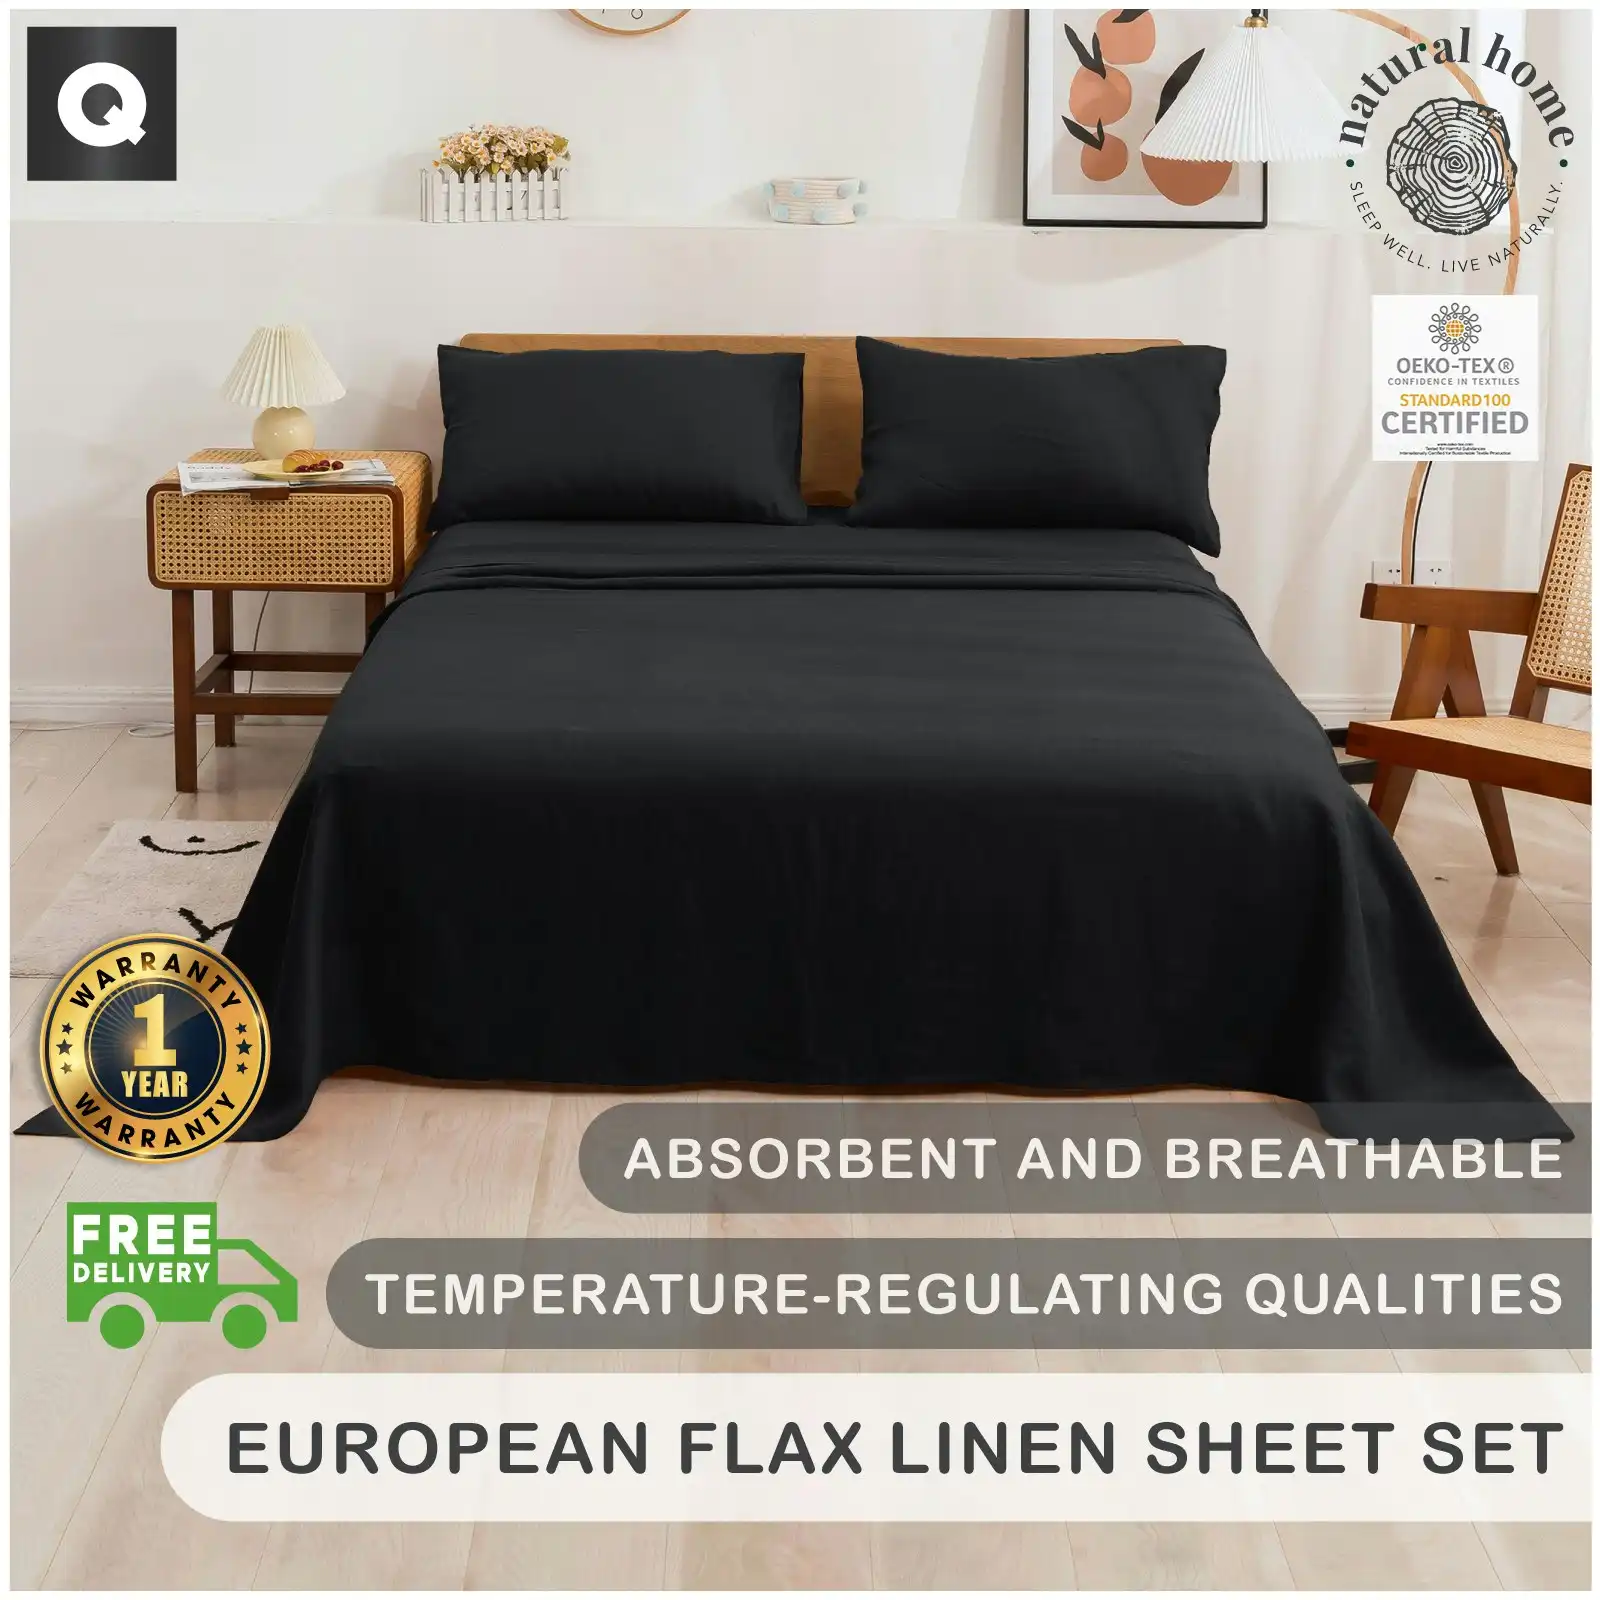 Natural Home 100% European Flax Linen Sheet Set Charcoal Queen Bed